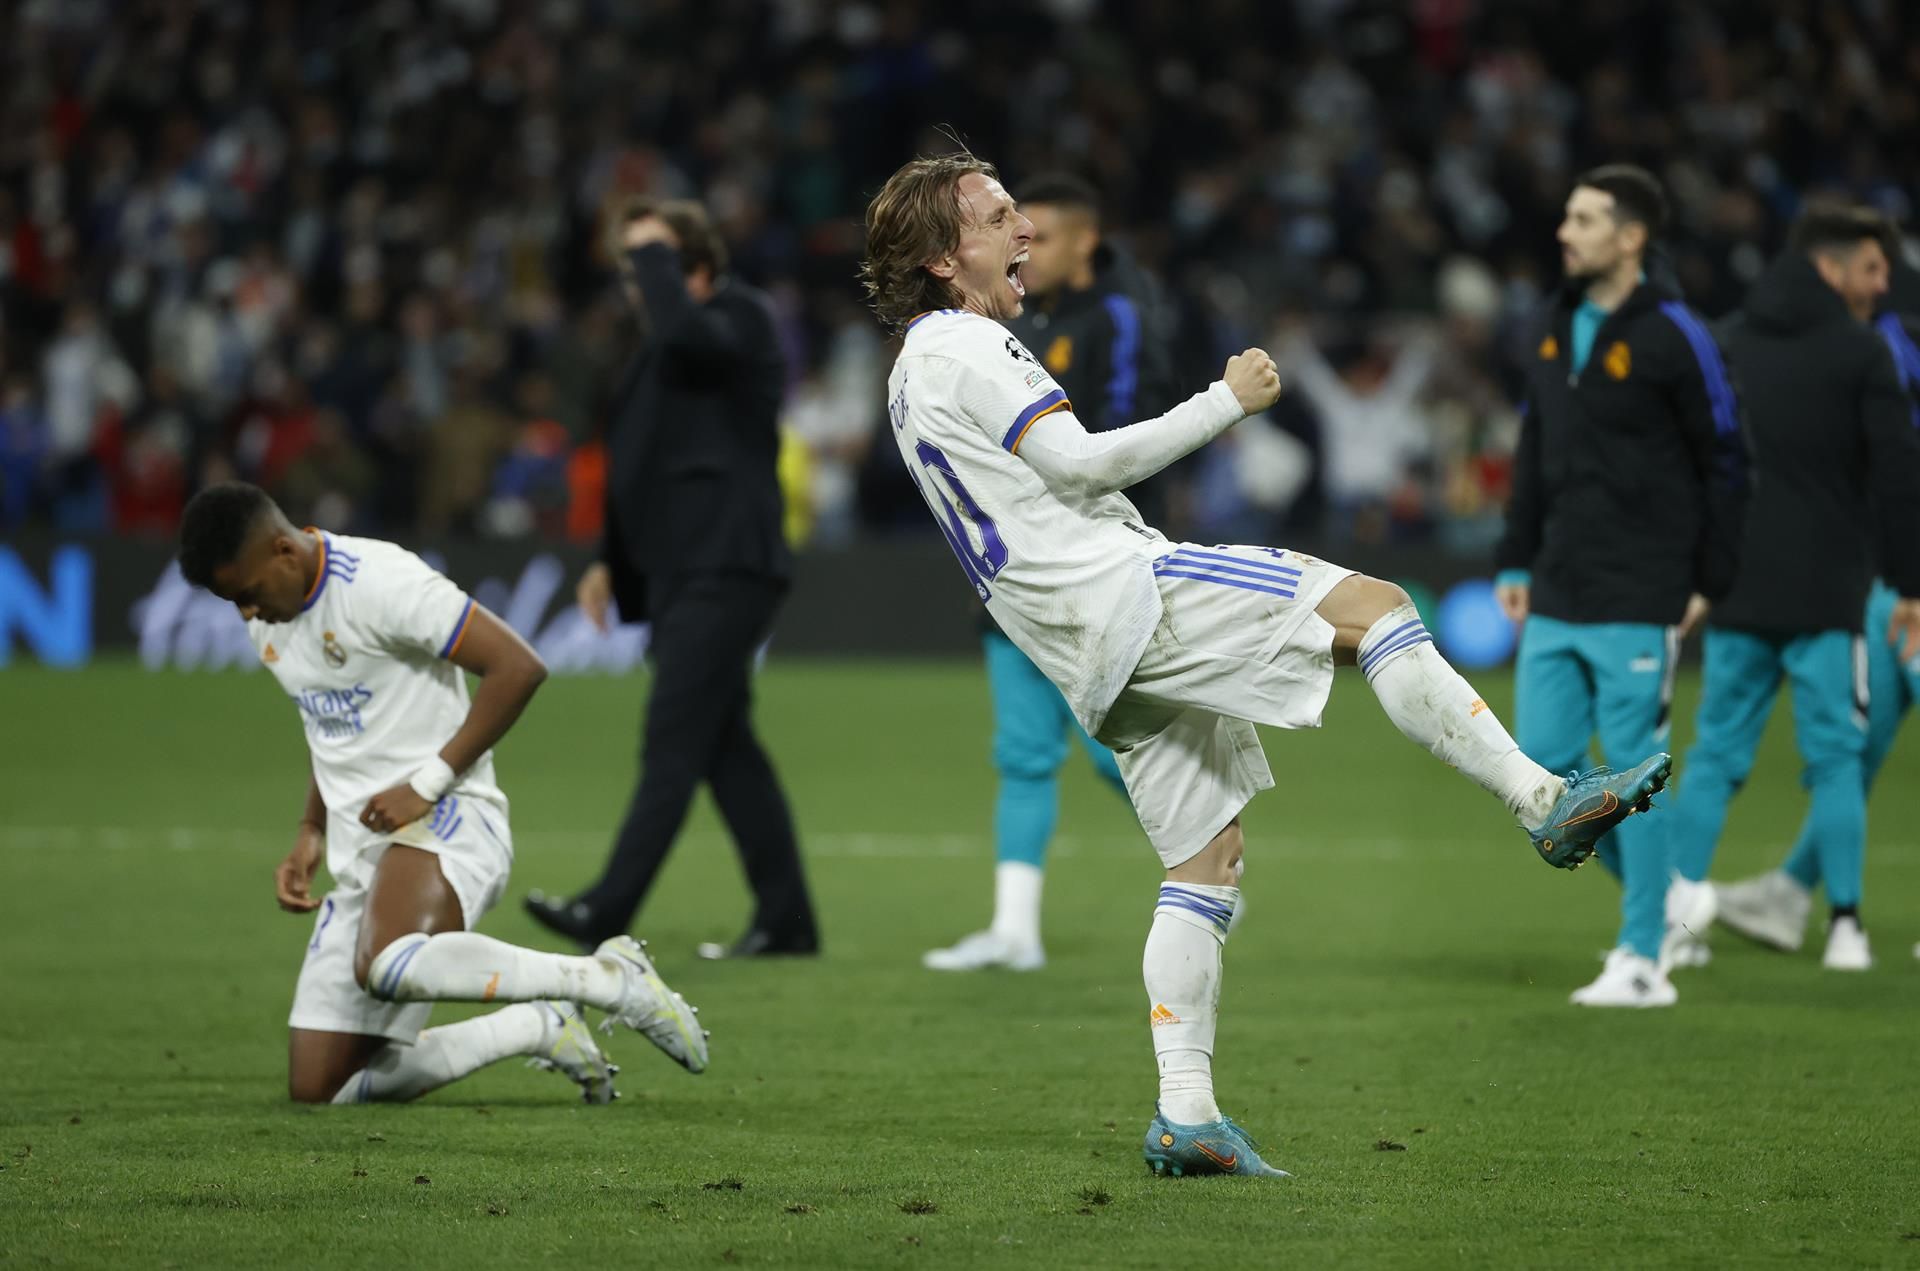 El Real Madrid o cuando sobrevivir en el alambre no siempre es un arte